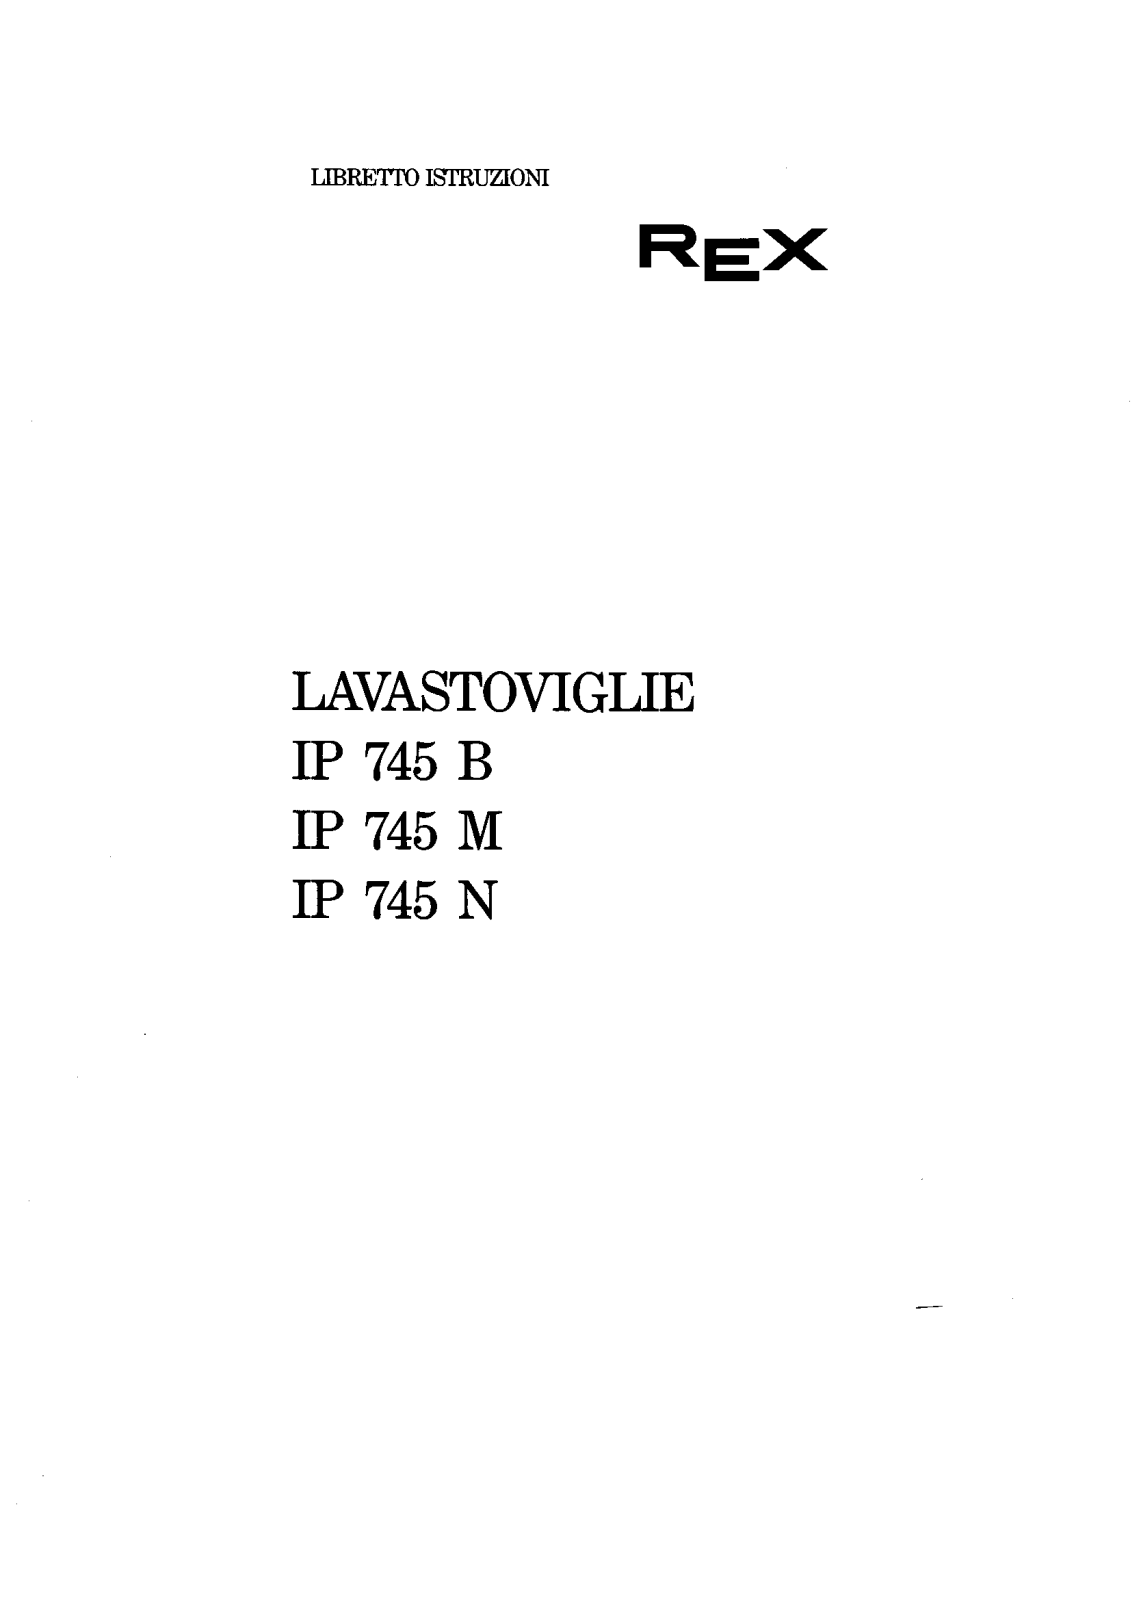 Rex IP745B, IP745N, IP745M User Manual